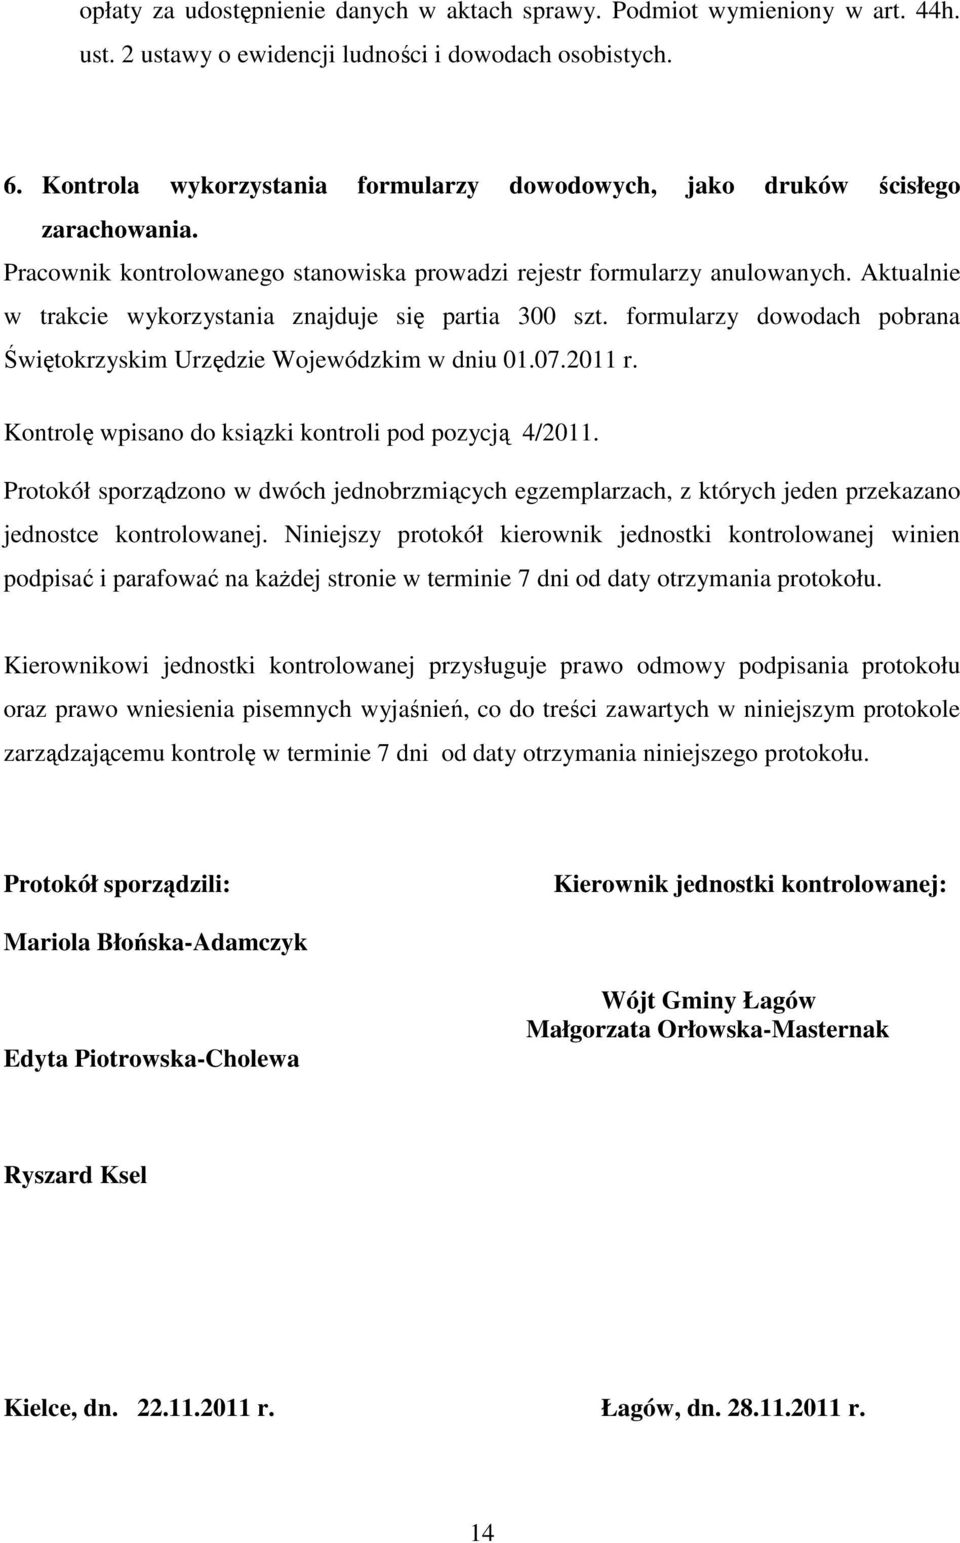 Aktualnie w trakcie wykorzystania znajduje się partia 300 szt. formularzy dowodach pobrana Świętokrzyskim Urzędzie Wojewódzkim w dniu 01.07.2011 r.